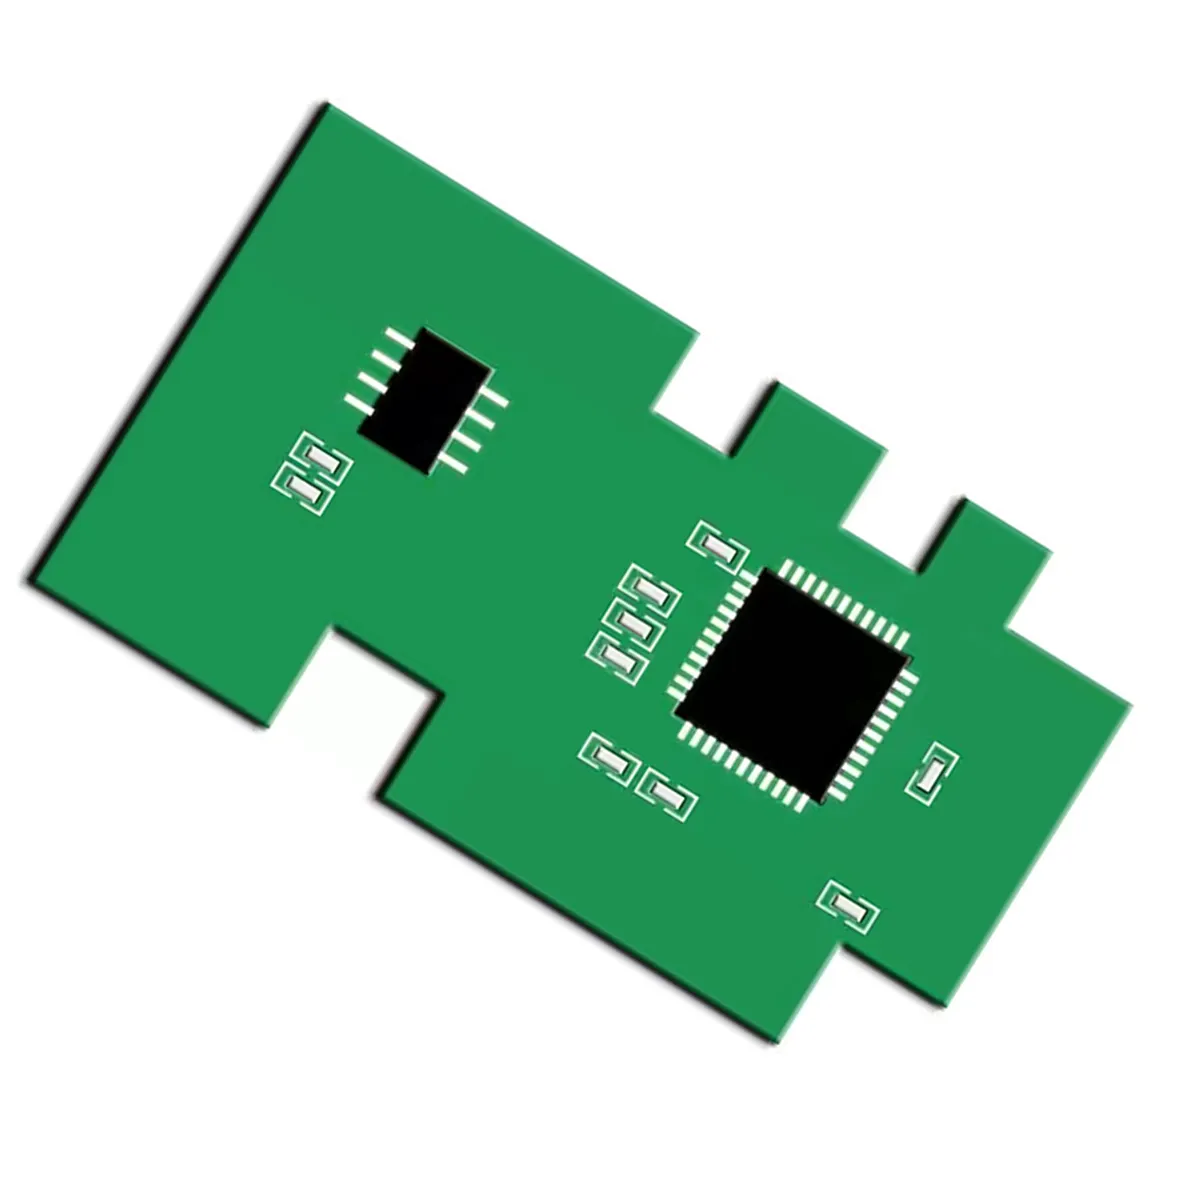 チップモノラルカートリッジチップSamsungMLT111コネクタヒューズ (PCB) チップ/Samsungインクジェット機器用